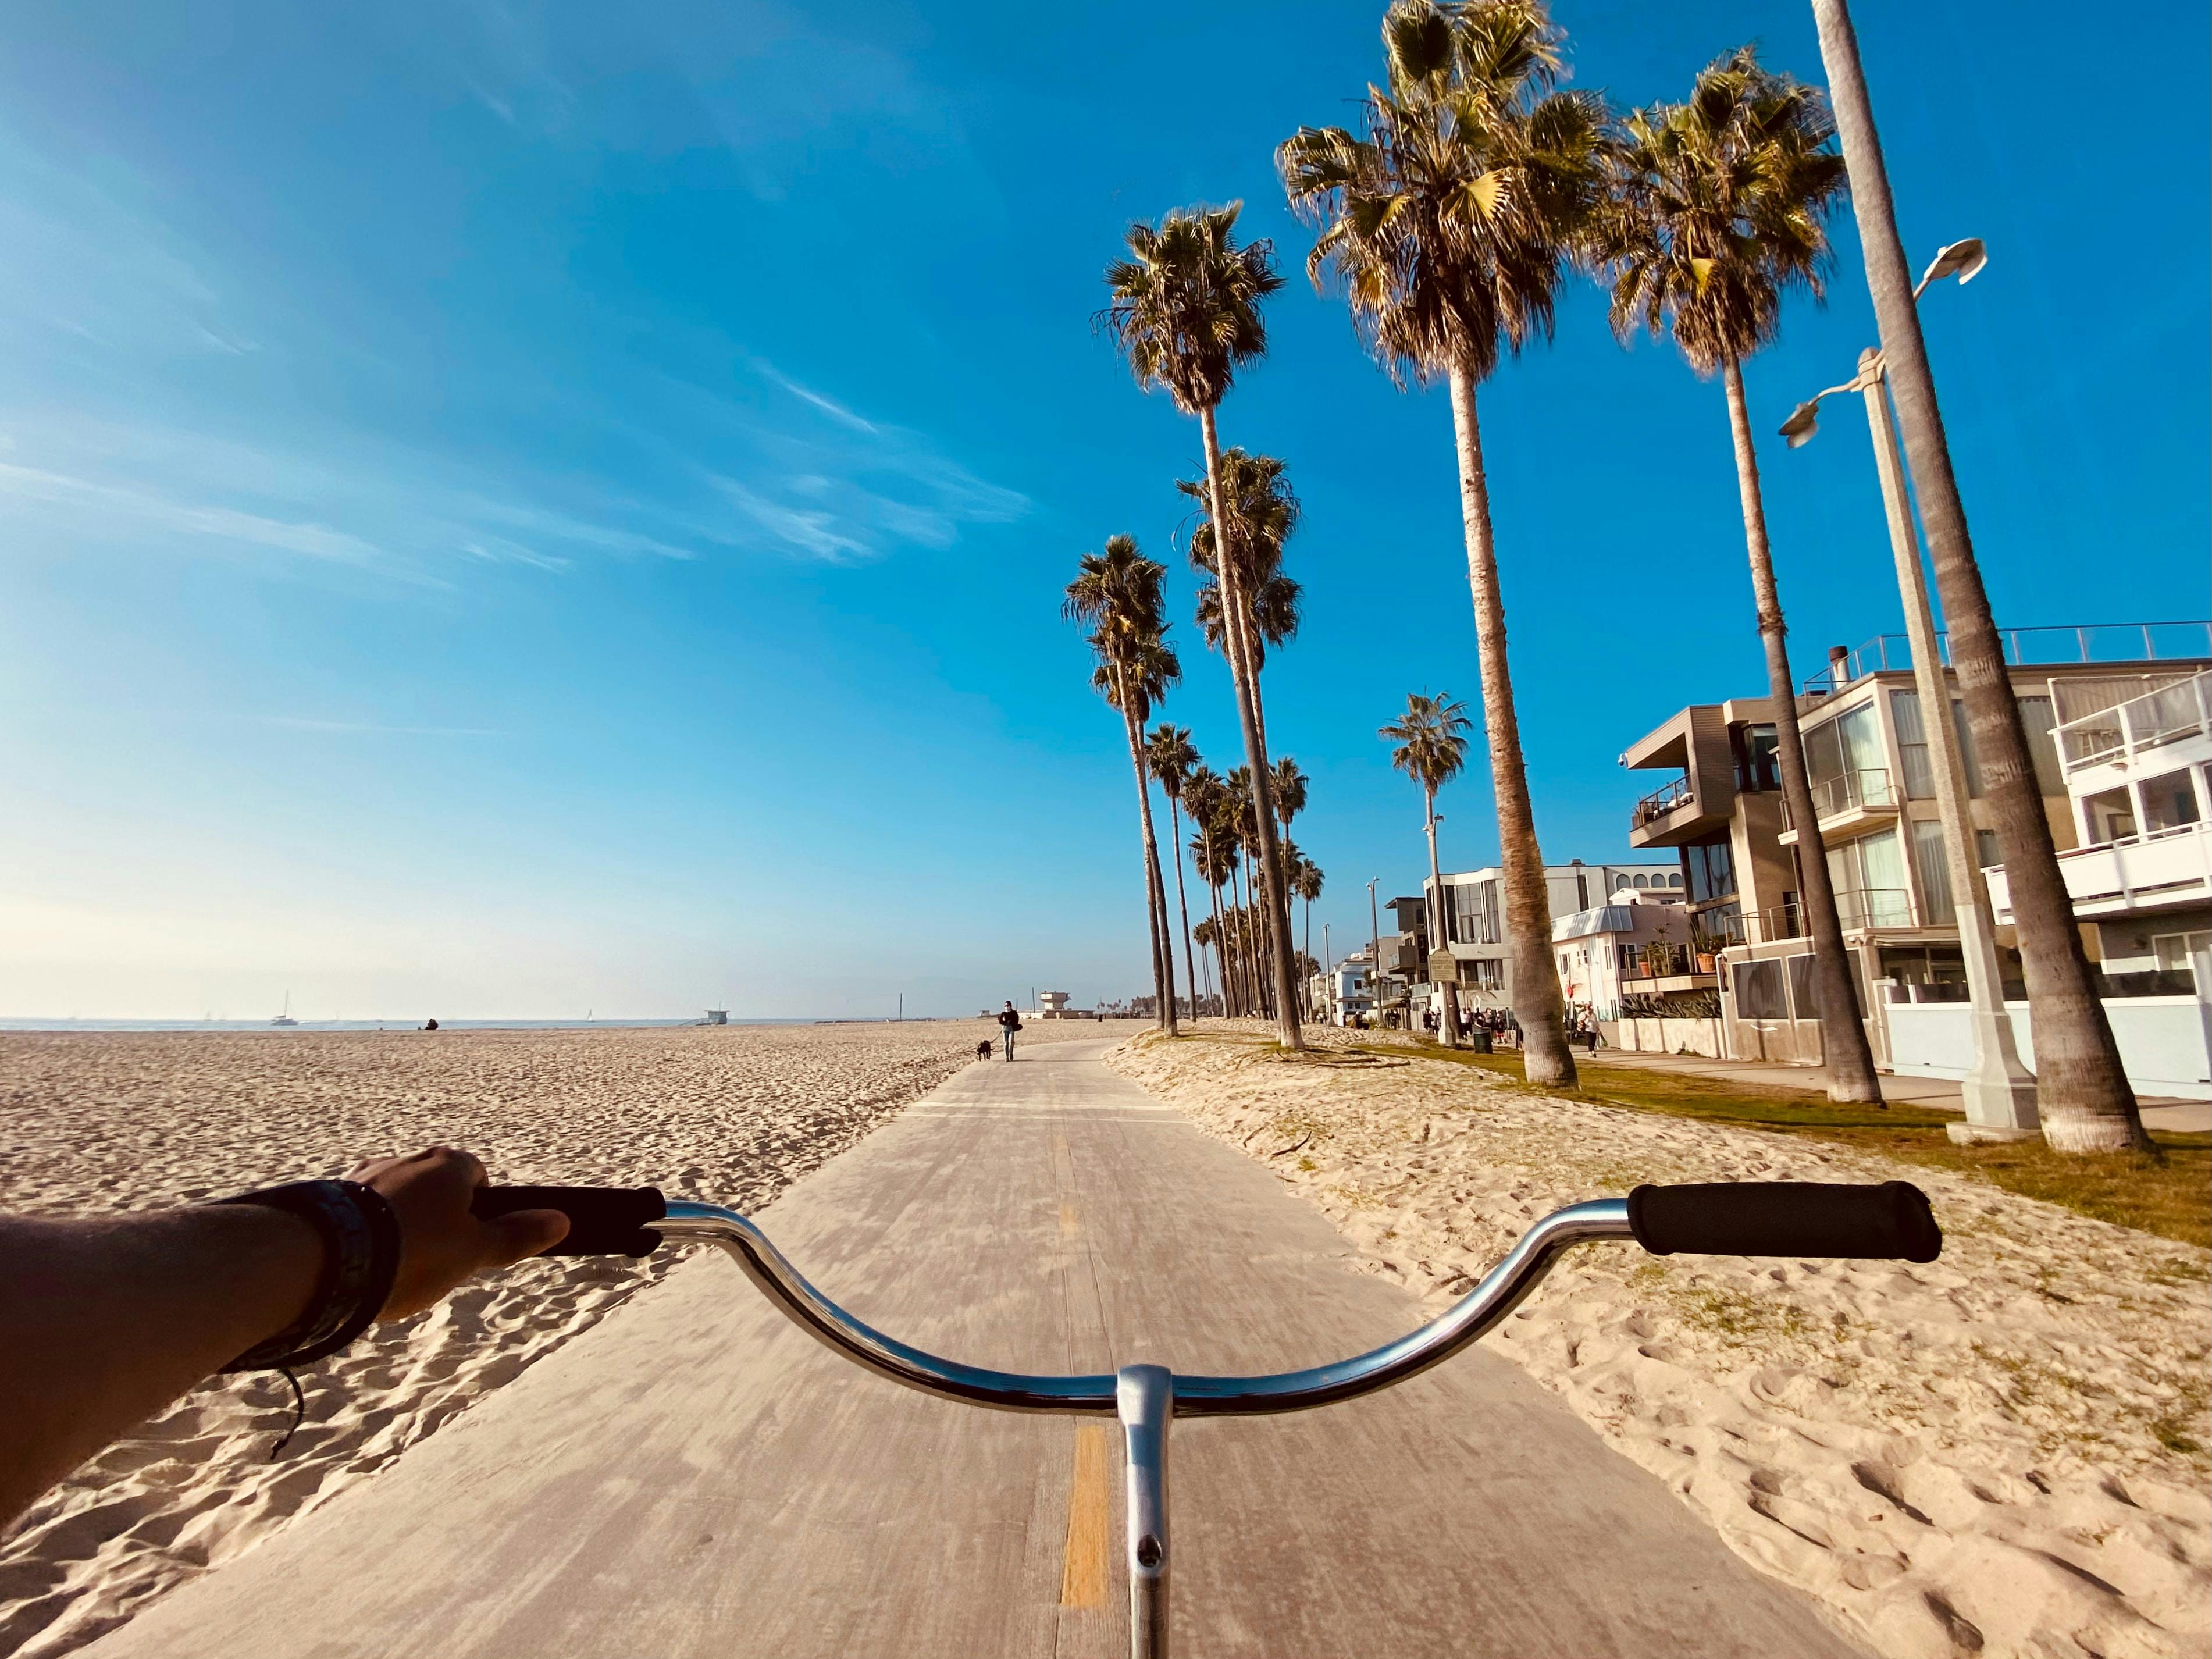 Venice Beach near Los Angeles